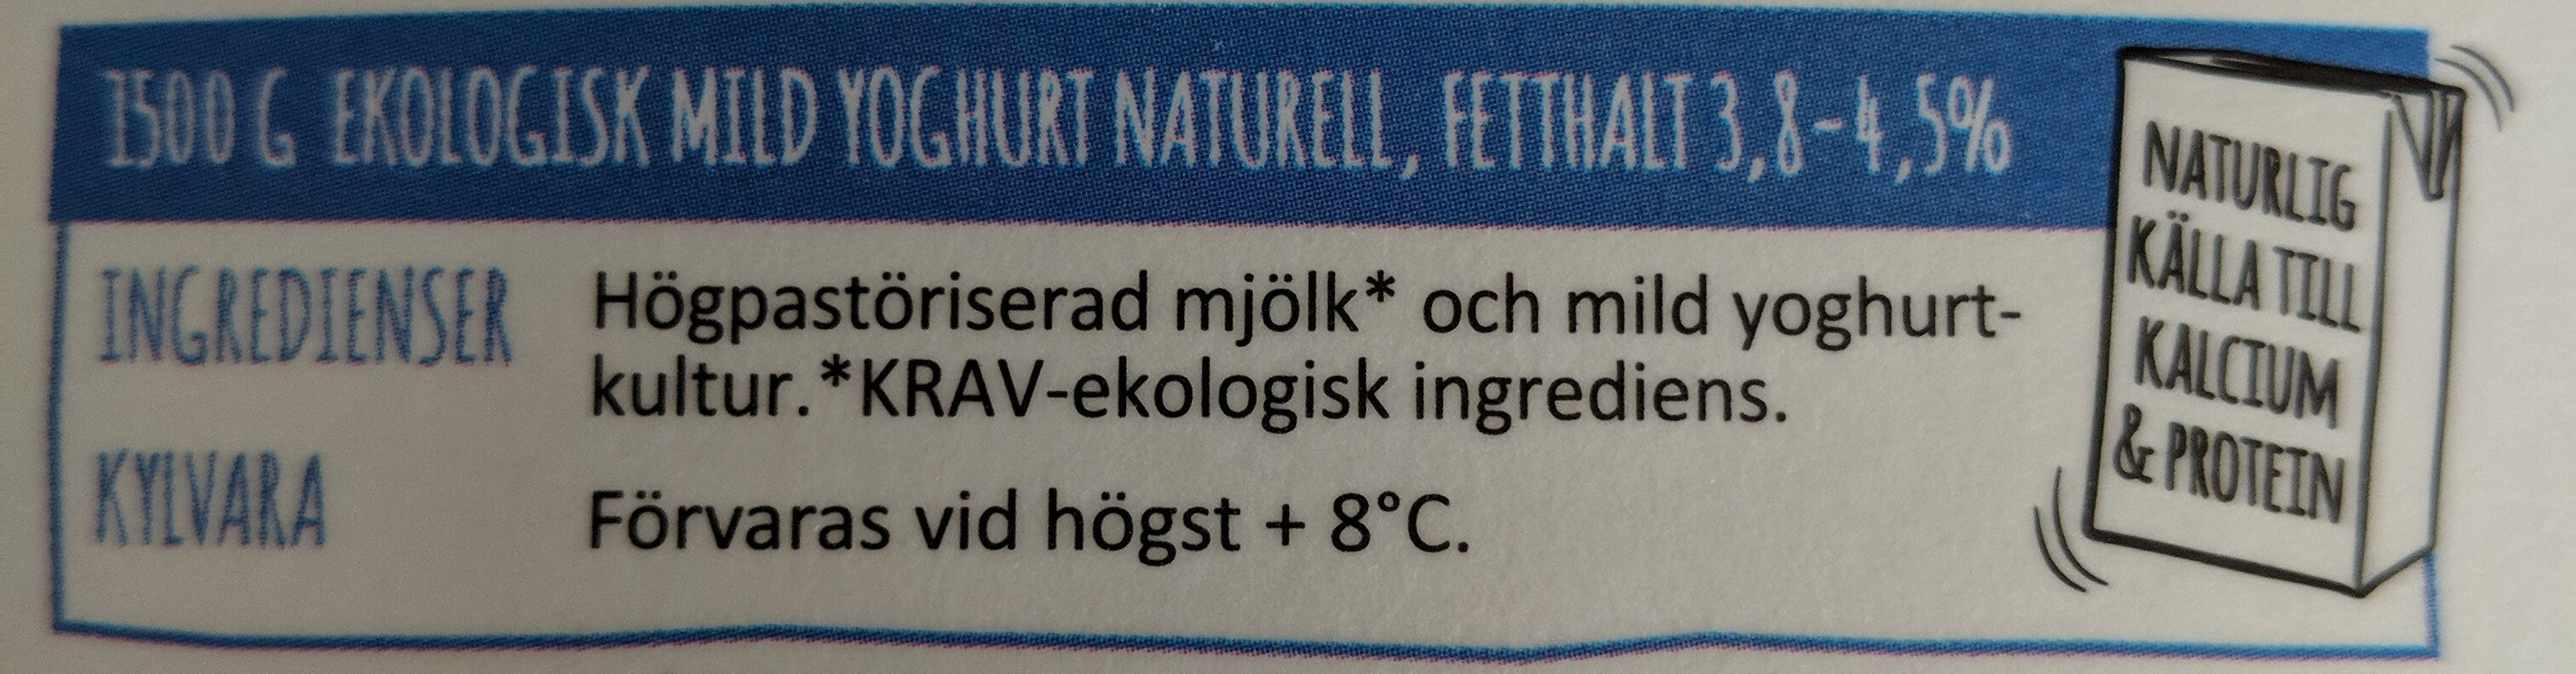 Eko Mild Yoghurt Naturlig Fetthalt 3.8-4.5% fett - Ingredienser